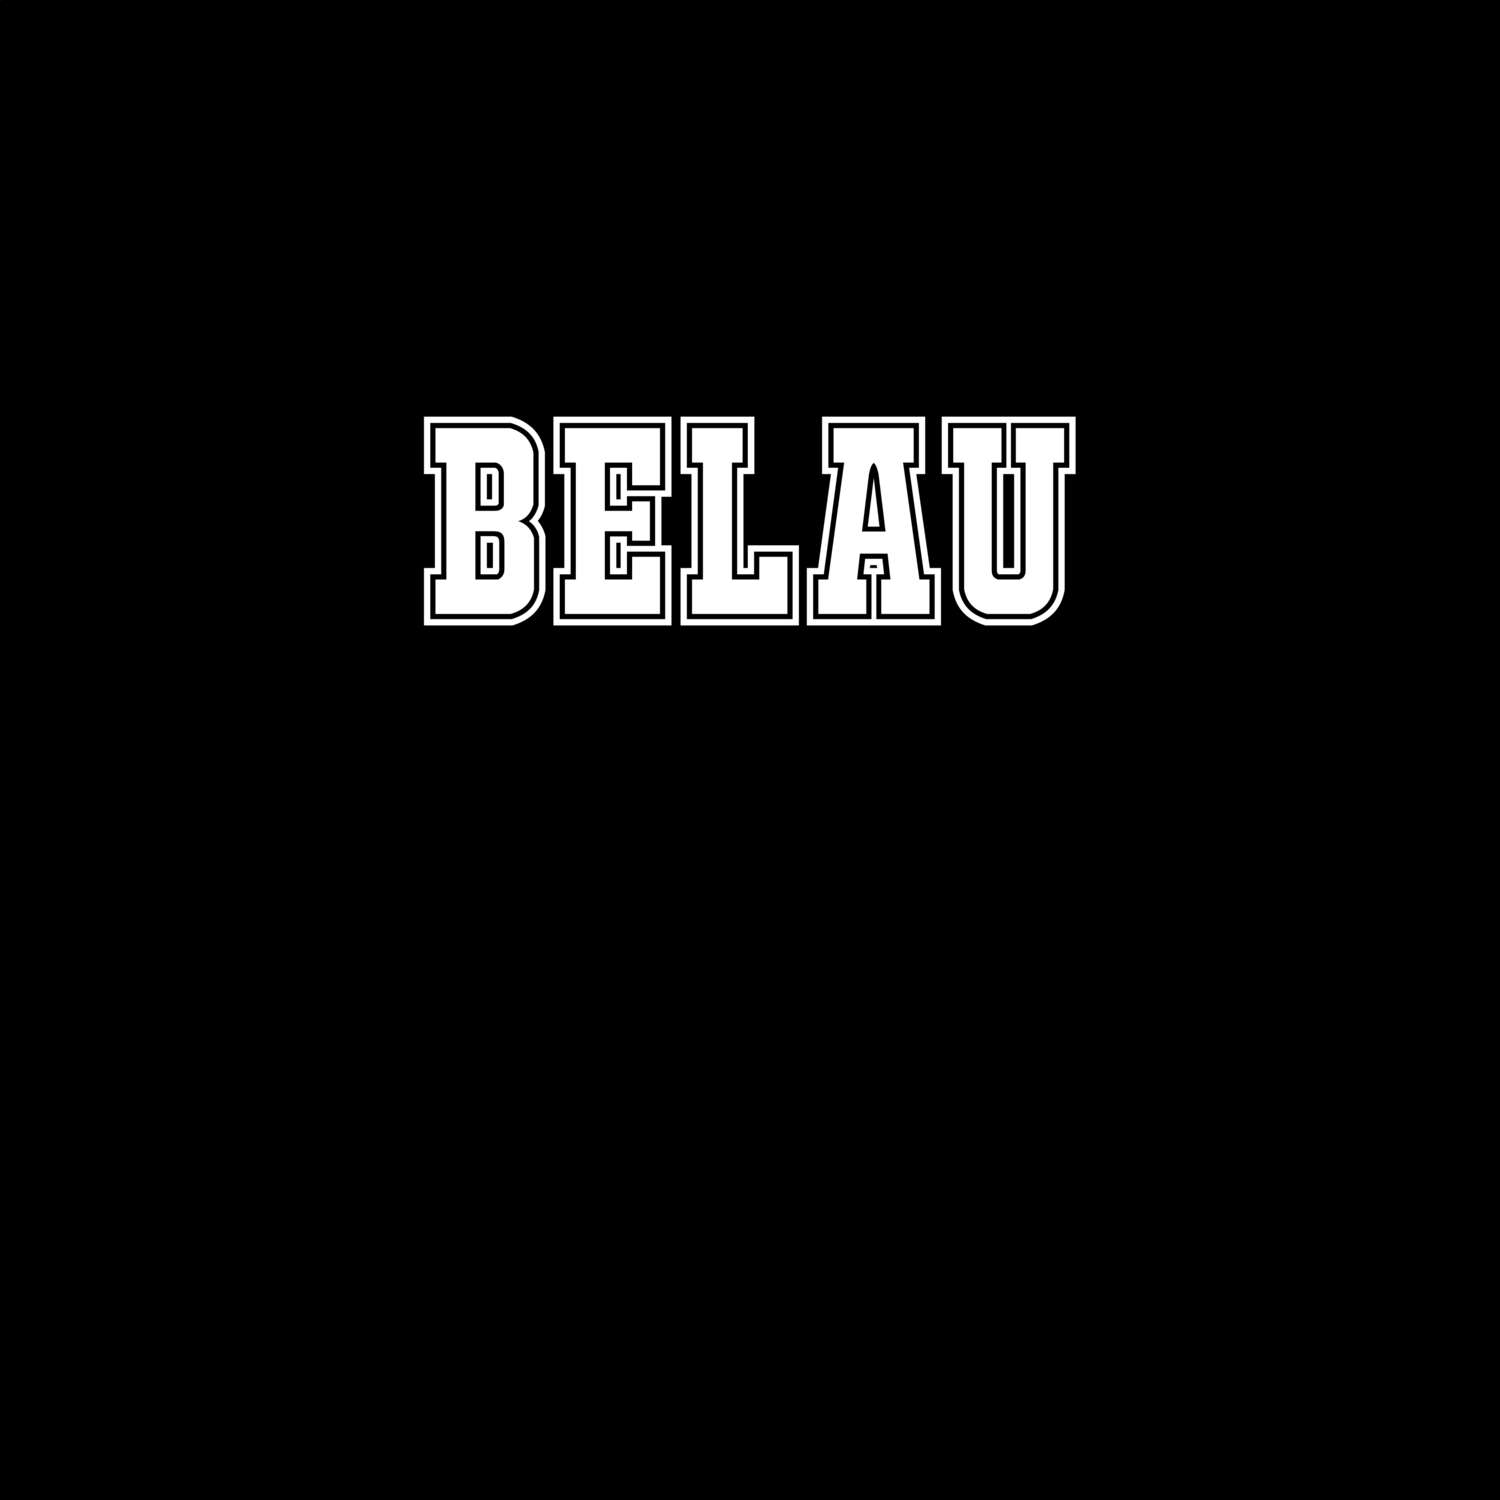 Belau T-Shirt »Classic«